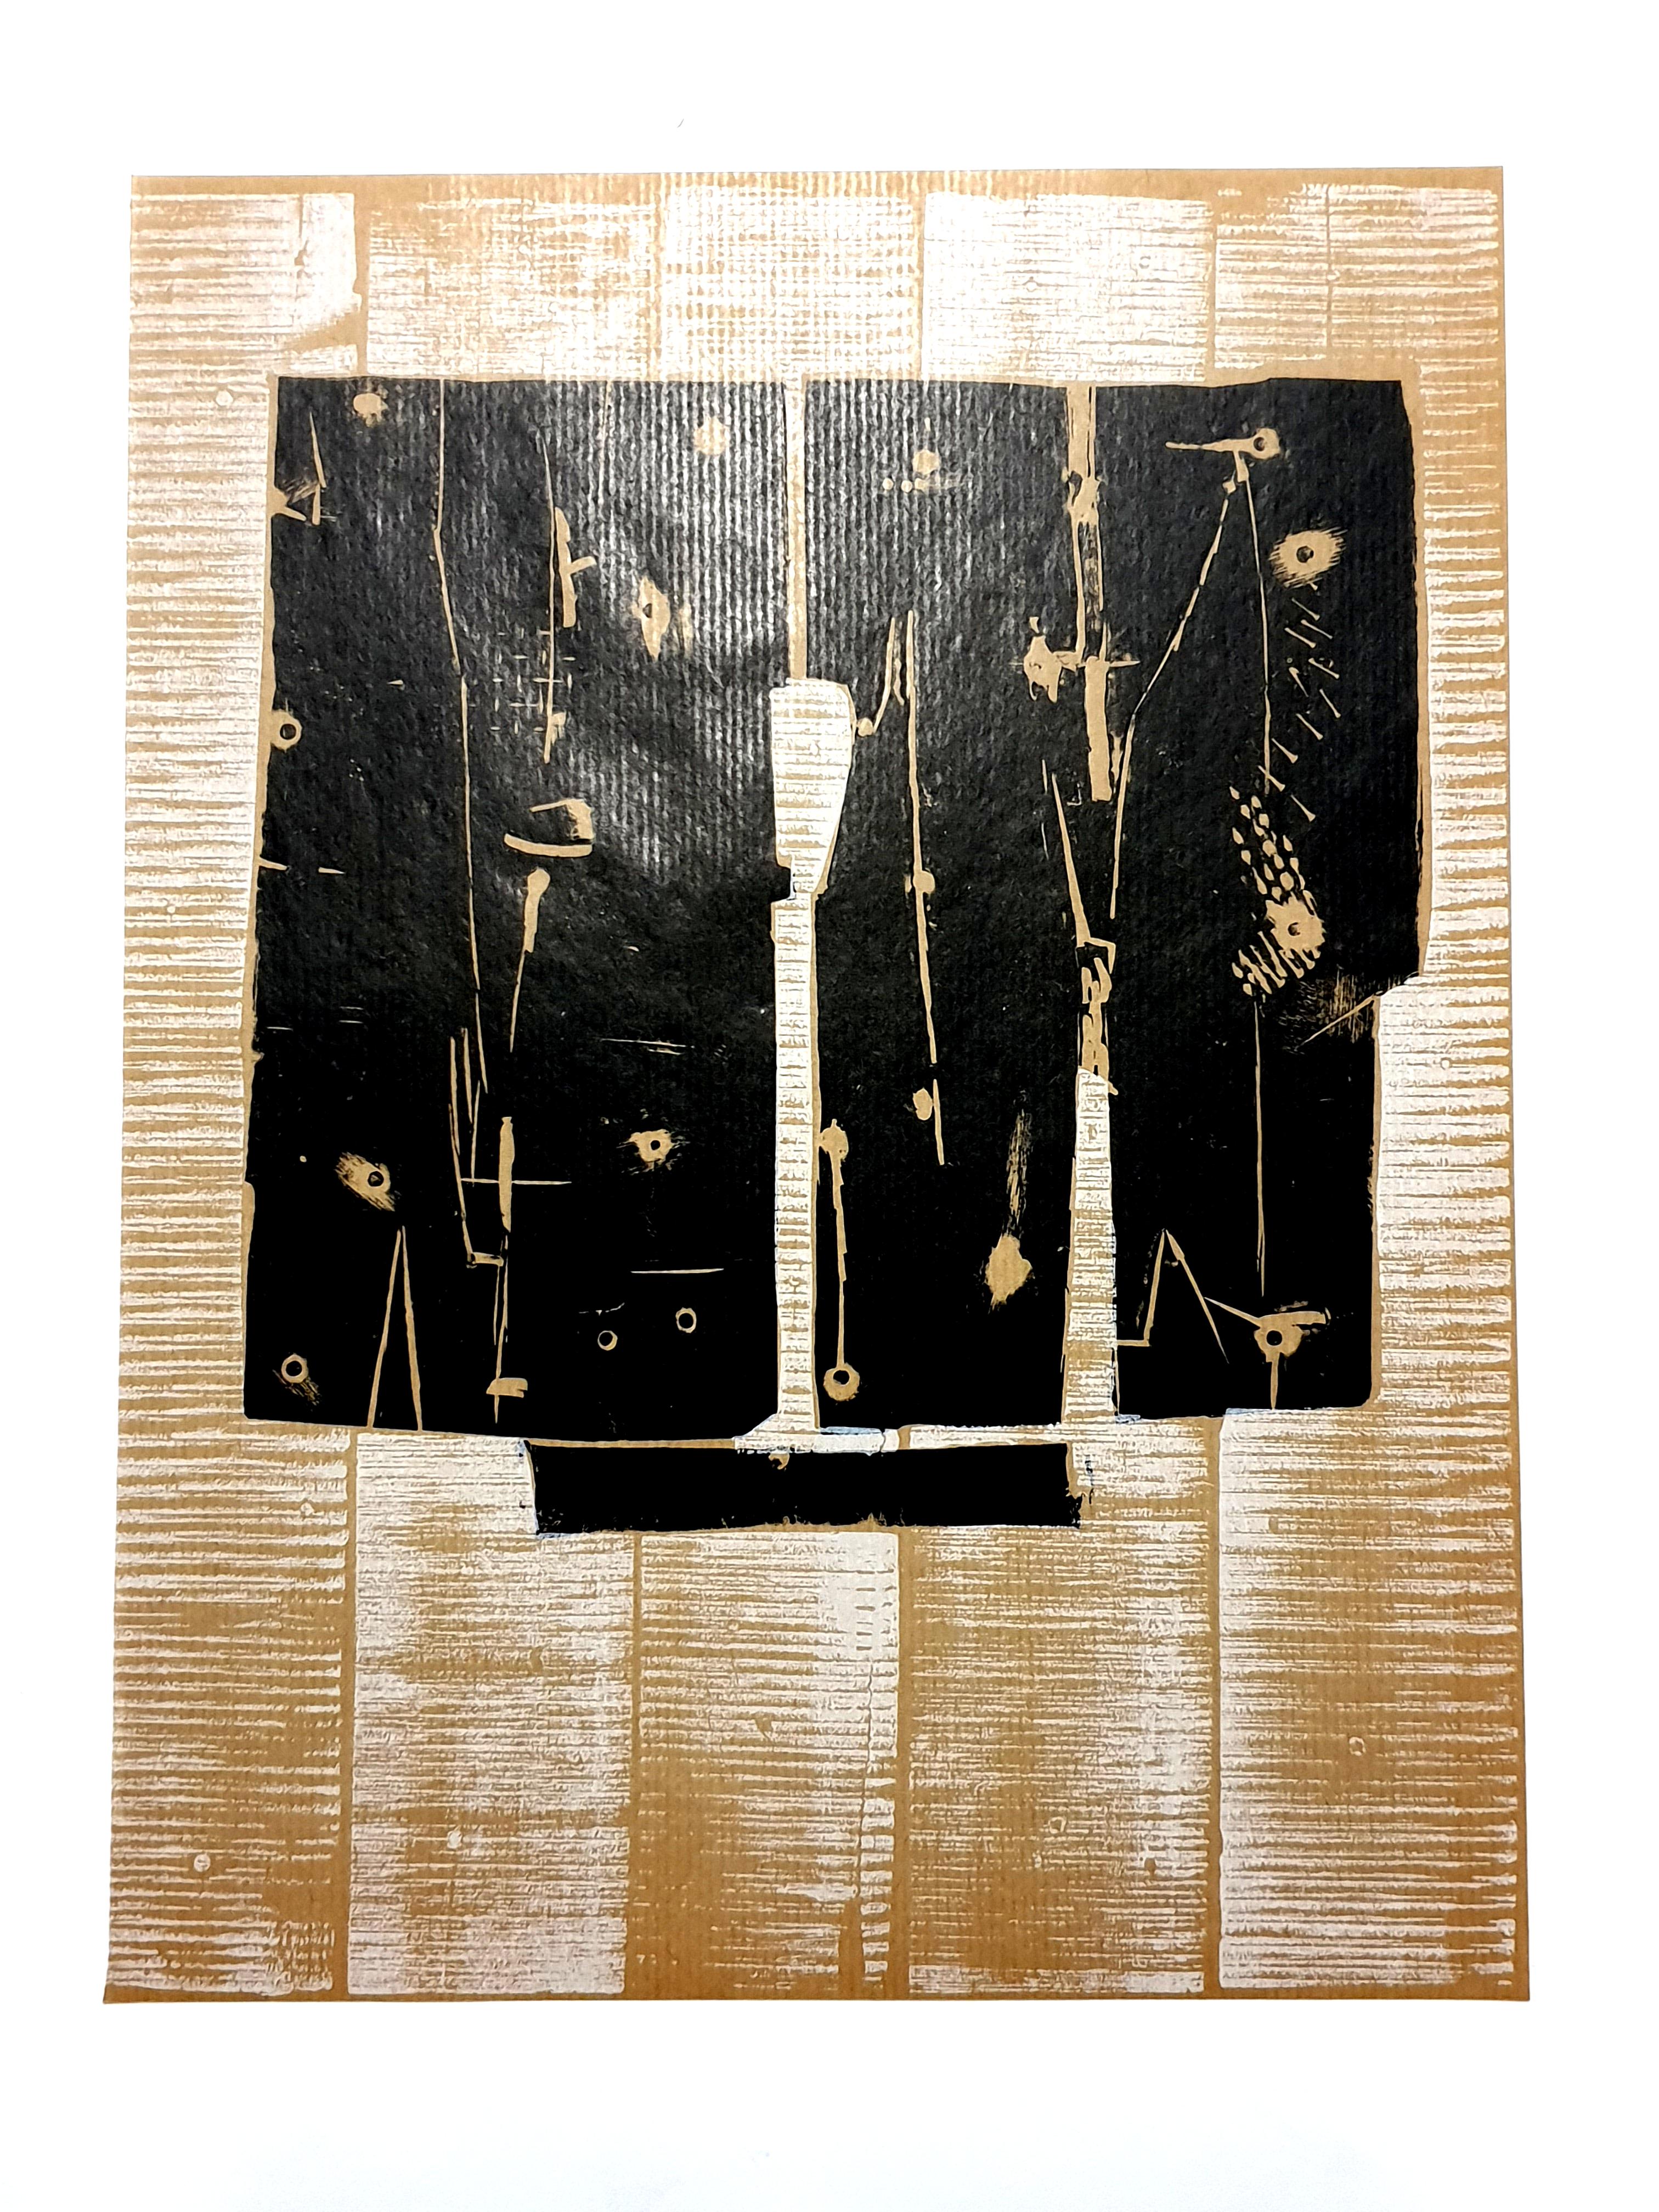 Pietro Consagra  Composition - Gravure originale
1959
Dimensions : 32 x 24 cm
D'après la revue d'art XXe siècle
Non signé et non numéroté tel qu'il a été émis